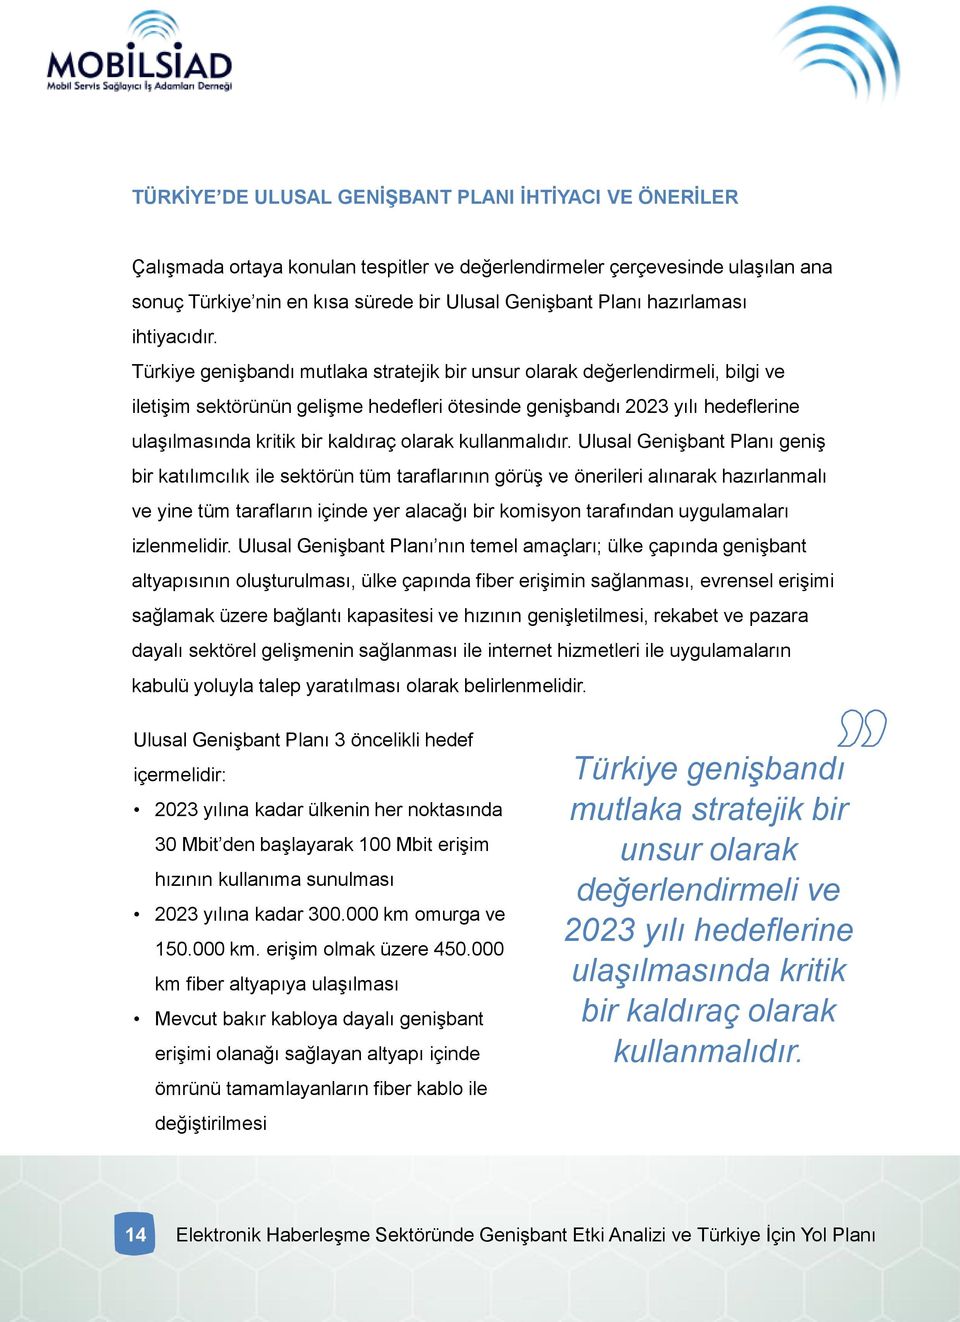 Türkiye genişbandı mutlaka stratejik bir unsur olarak değerlendirmeli, bilgi ve iletişim sektörünün gelişme hedefleri ötesinde genişbandı 2023 yılı hedeflerine ulaşılmasında kritik bir kaldıraç